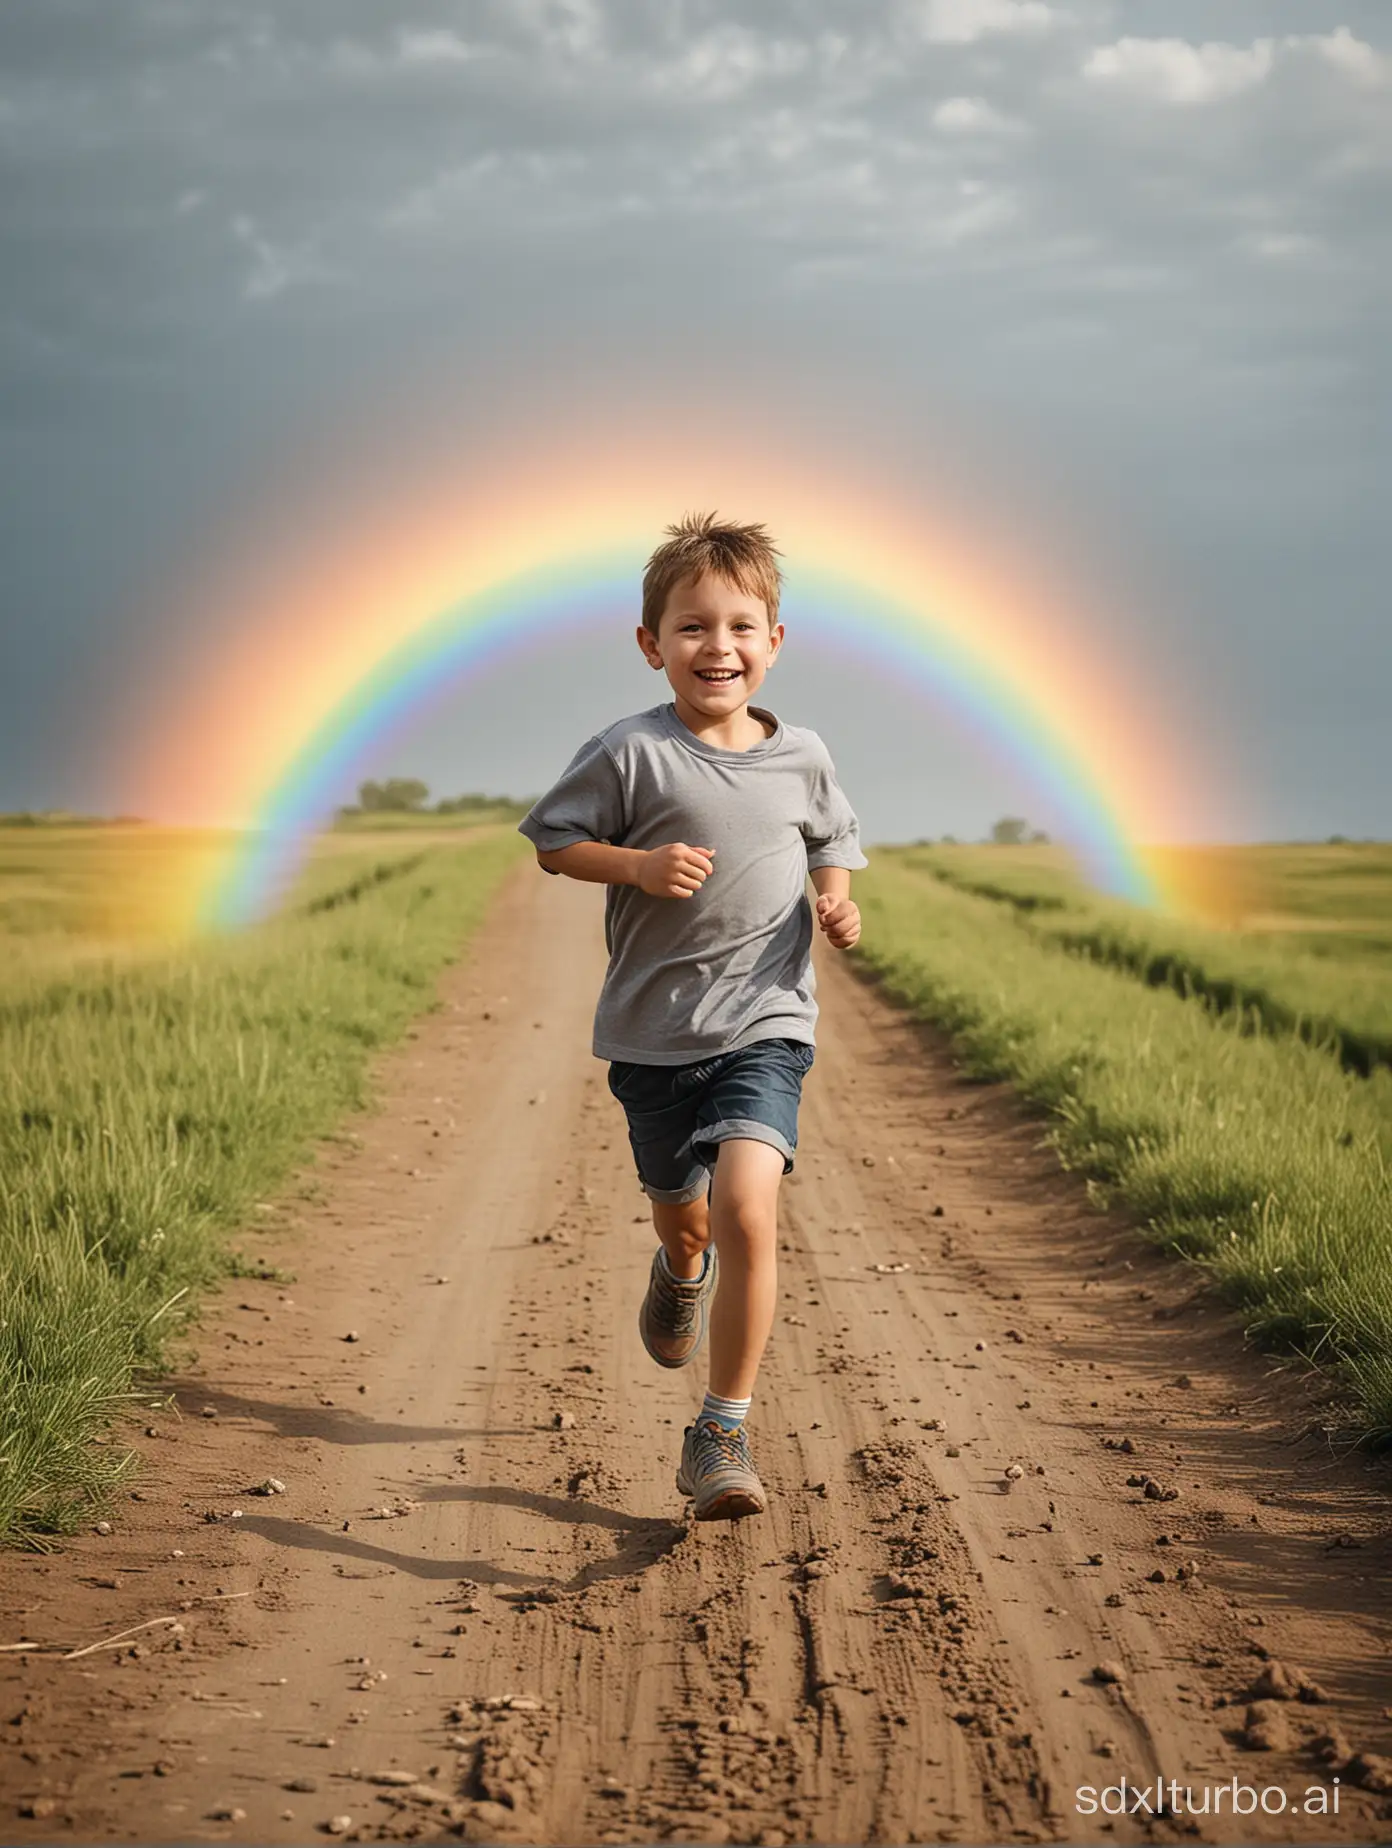 一个在彩虹上奔跑的男孩
